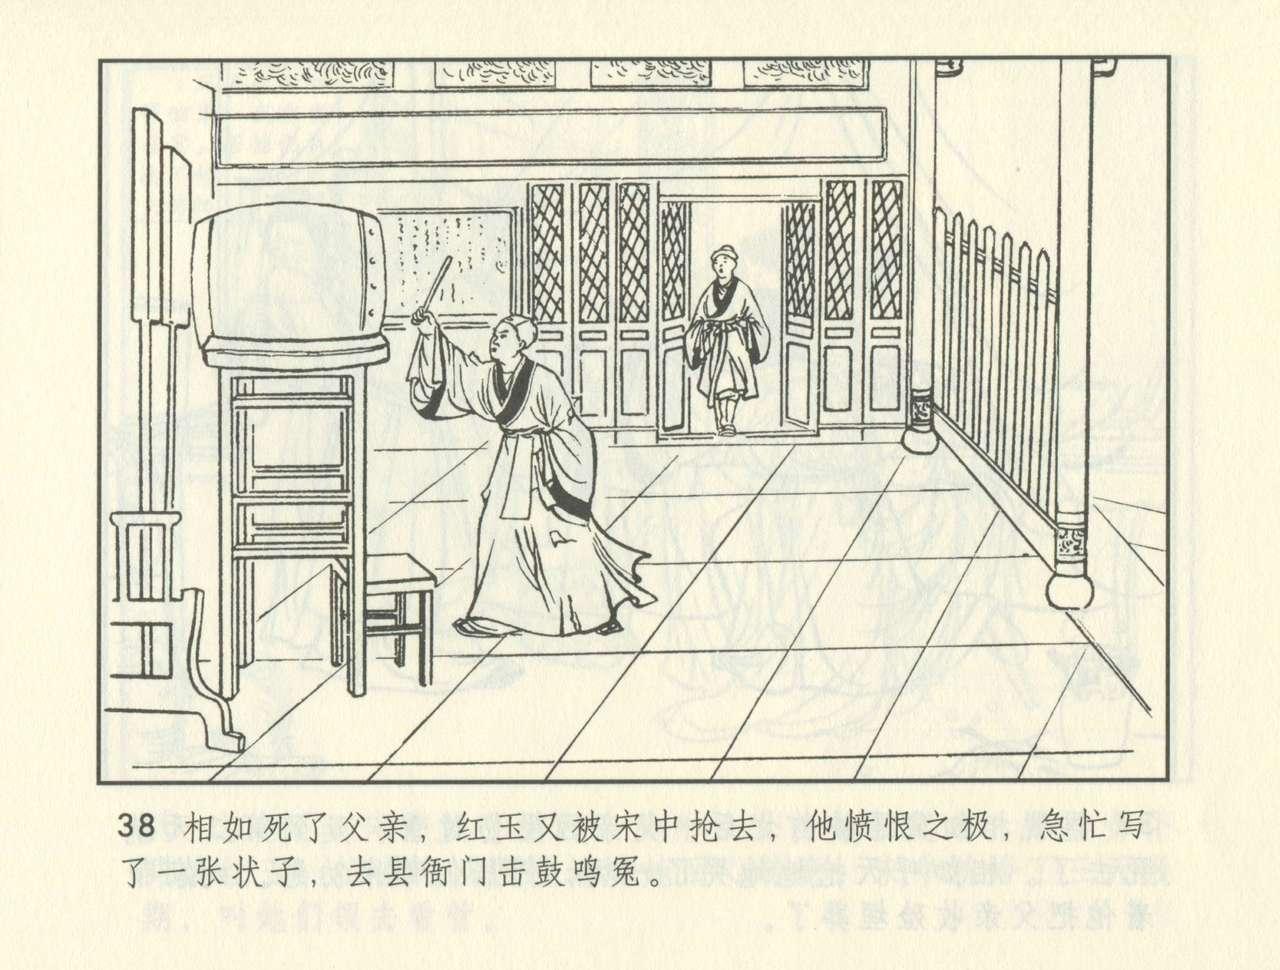 聊斋志异 张玮等绘 天津人民美术出版社 卷二十一 ~ 三十 378